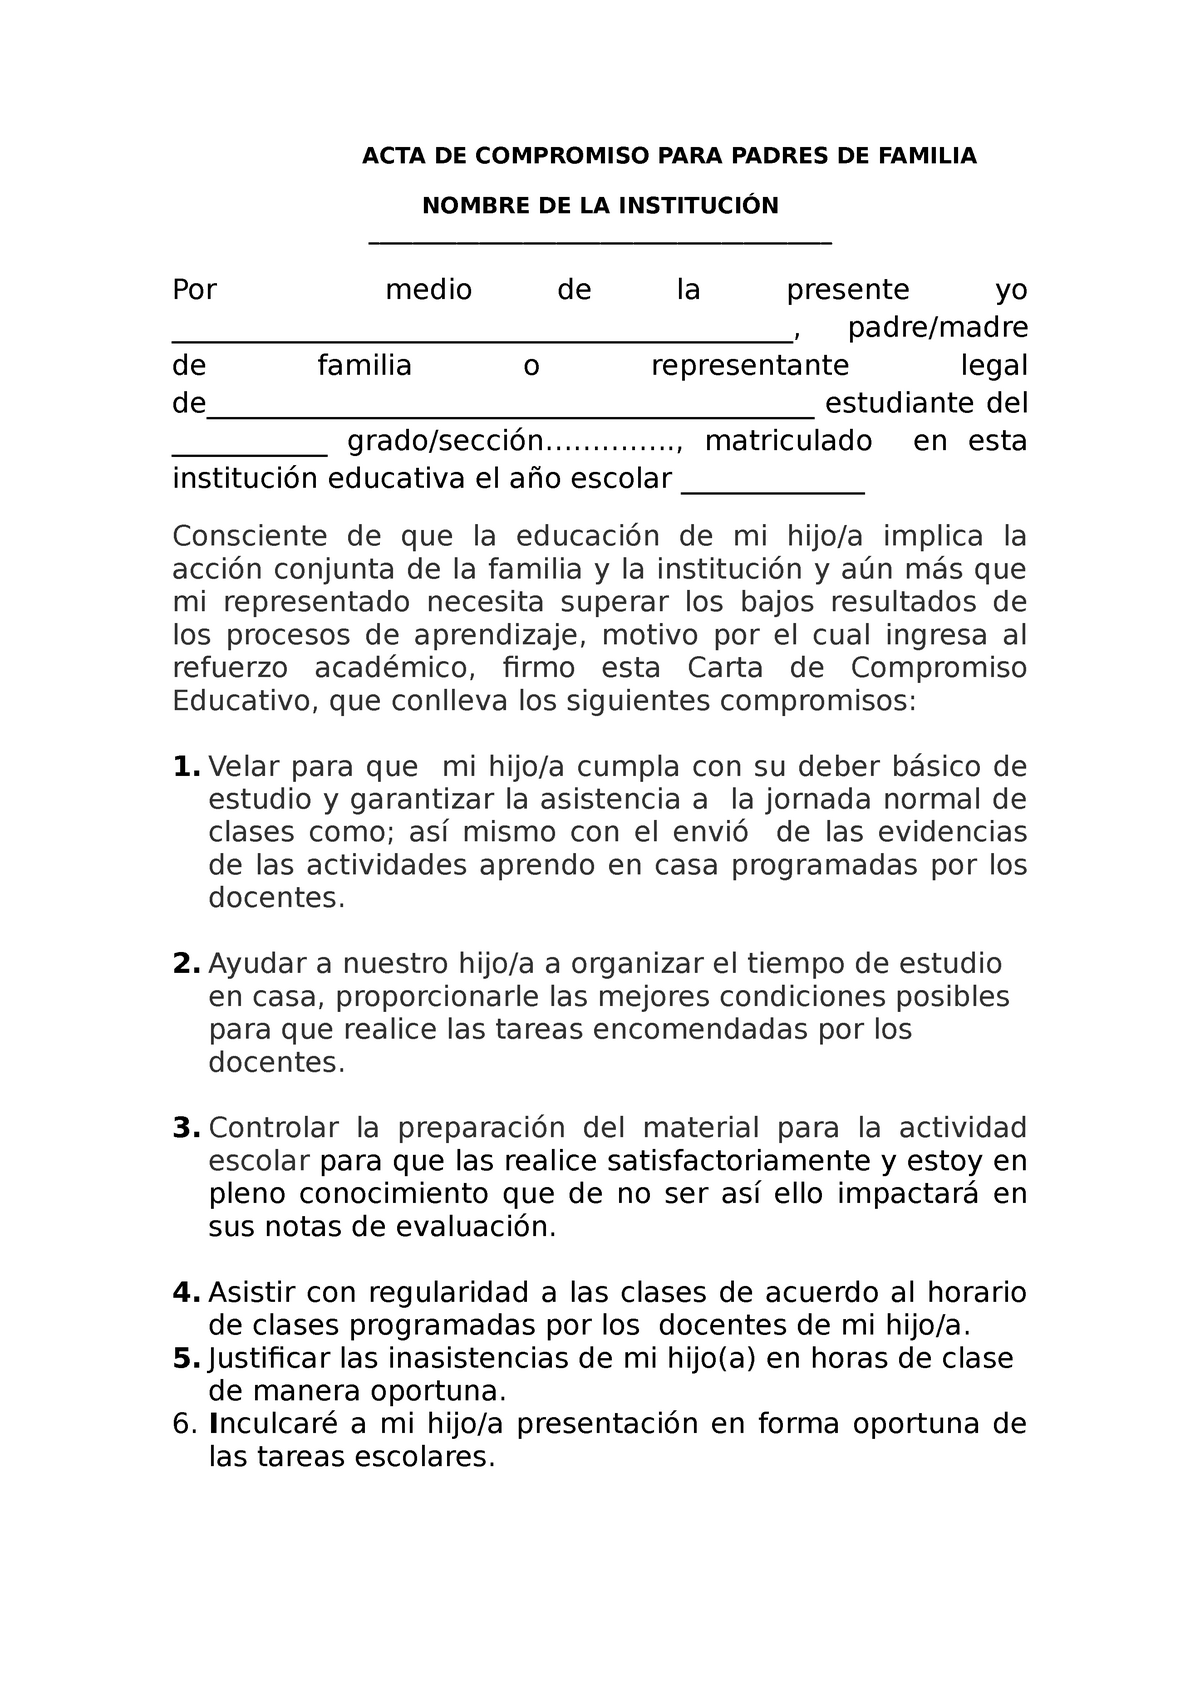 Acta de Compromiso para Padres de Familia - ACTA DE COMPROMISO PARA PADRES  DE FAMILIA NOMBRE DE LA - Studocu